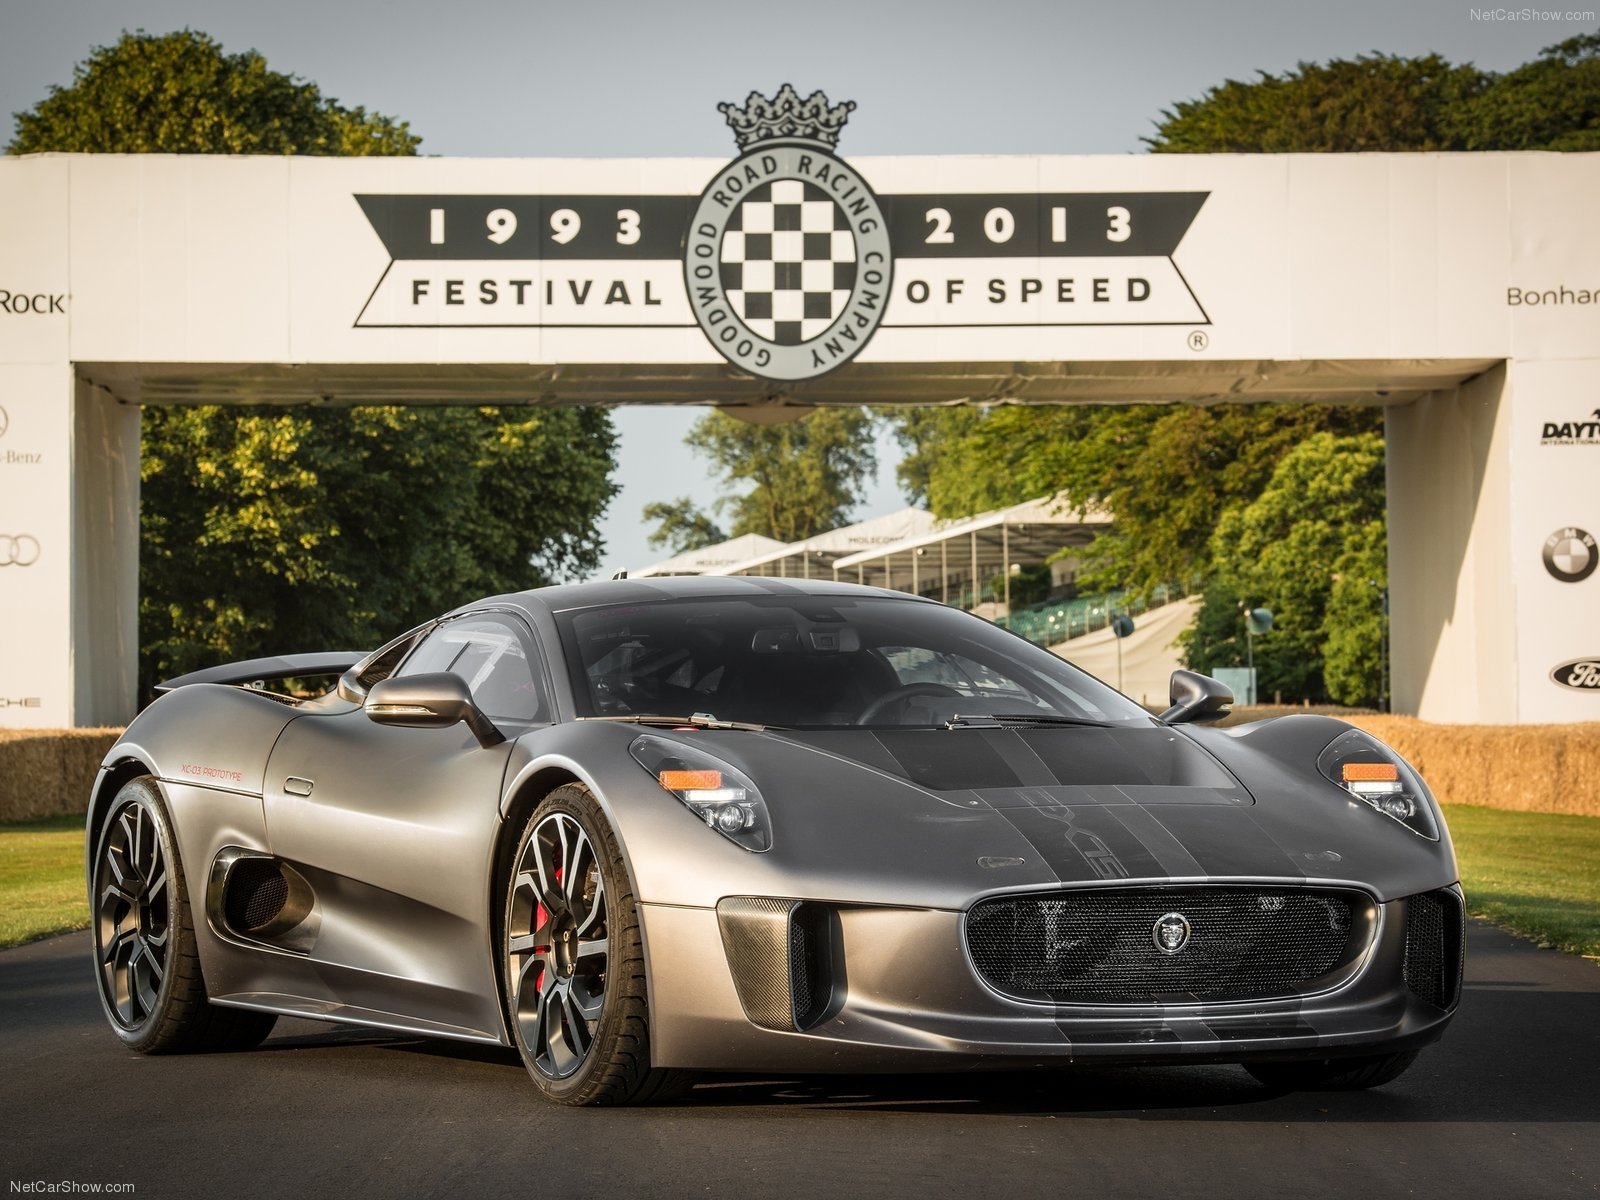 2013, C x75, Cars, Concept, Jaguar, Supercars Wallpaper